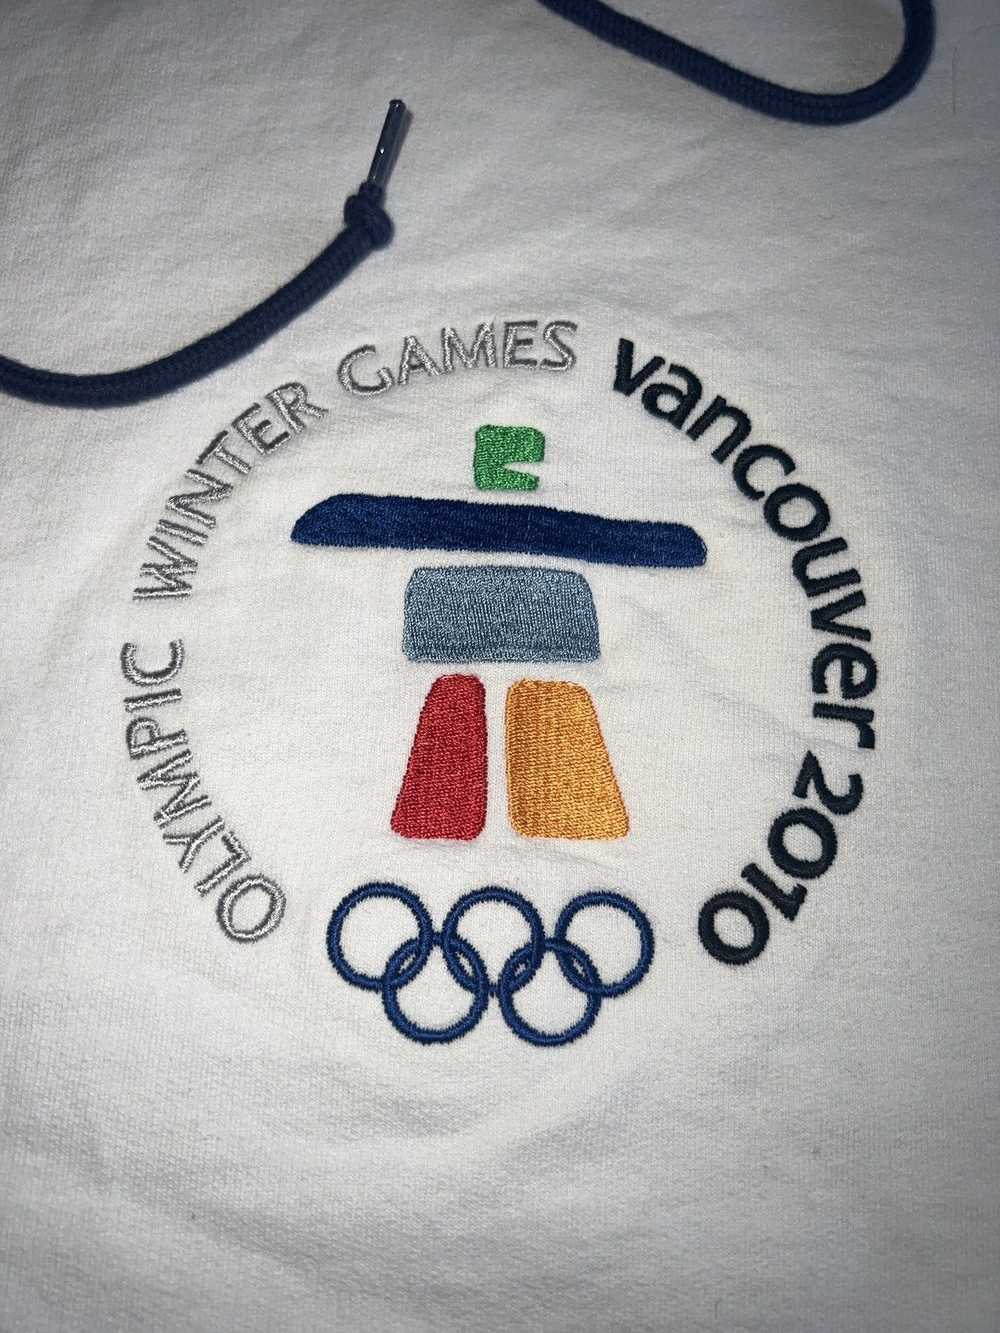 Vintage 2010 Winter Olympic Games Hoodie - image 1